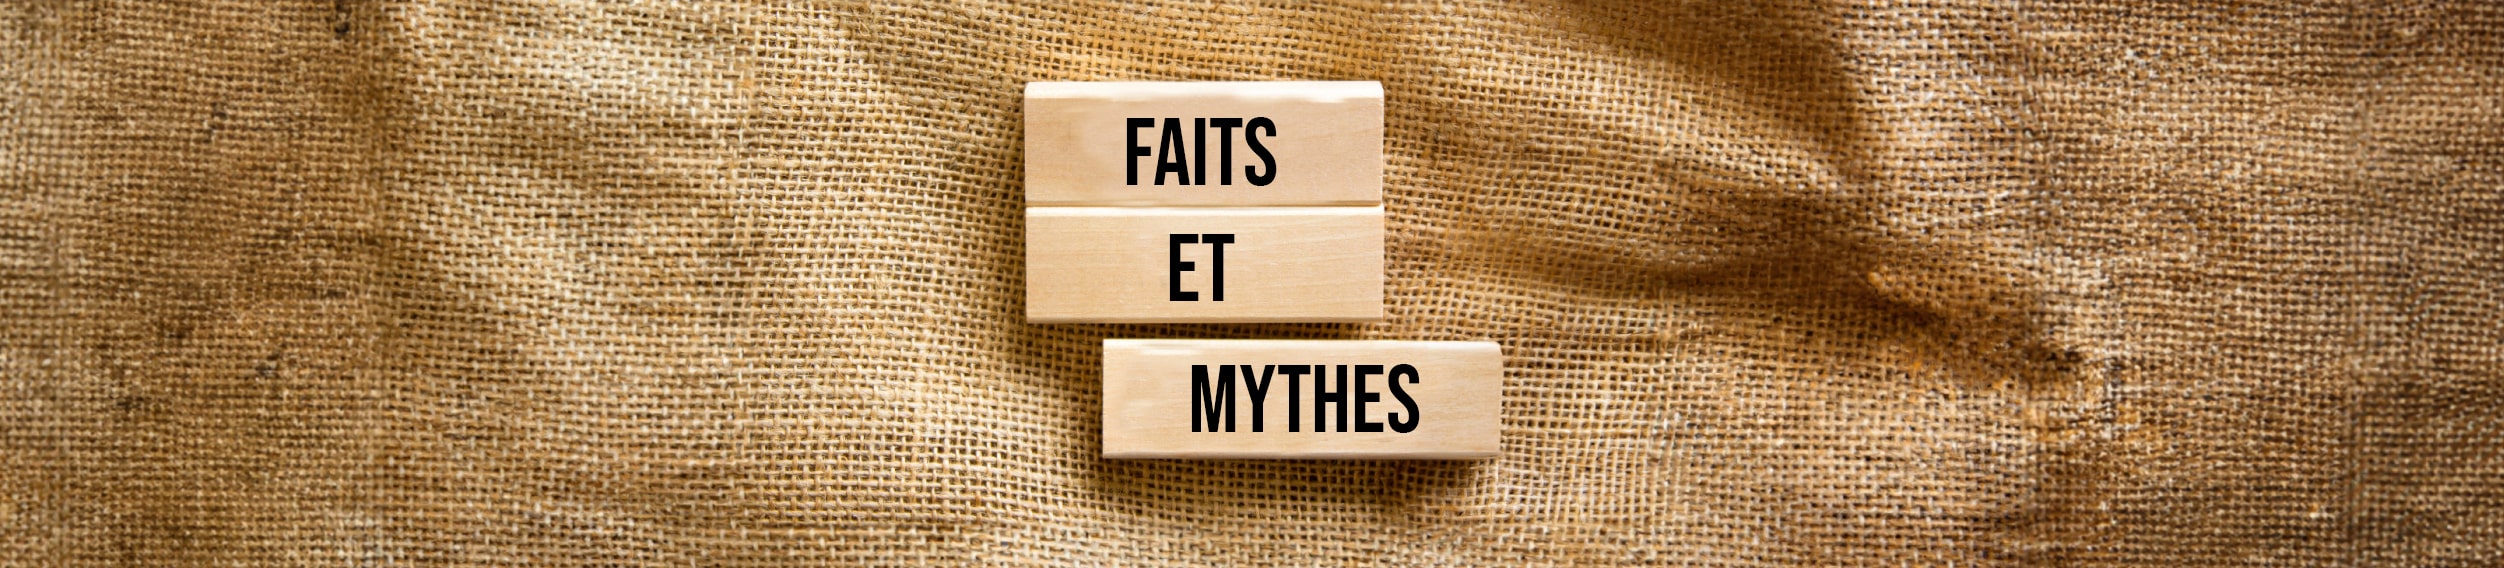 Briser les mythes : les programmes thérapeutiques comme Parler pour changer (PPC) sont‑ils efficaces?